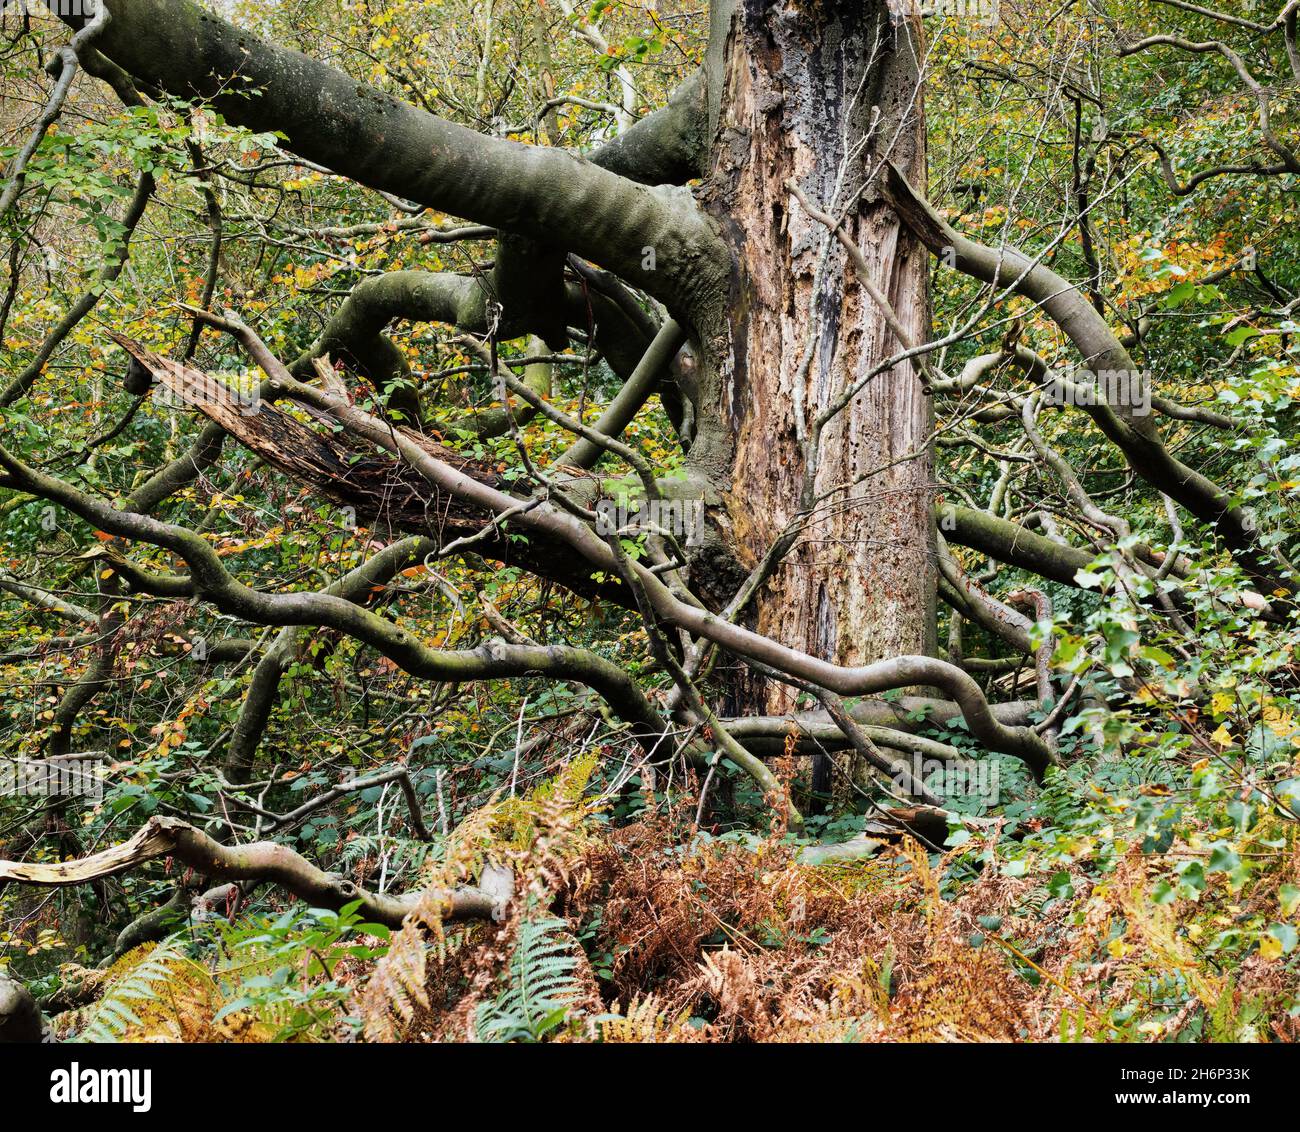 Un árbol inusual, con ramas retorcidas en un entorno natural de bosque, con helechos otoñales debajo del árbol Foto de stock